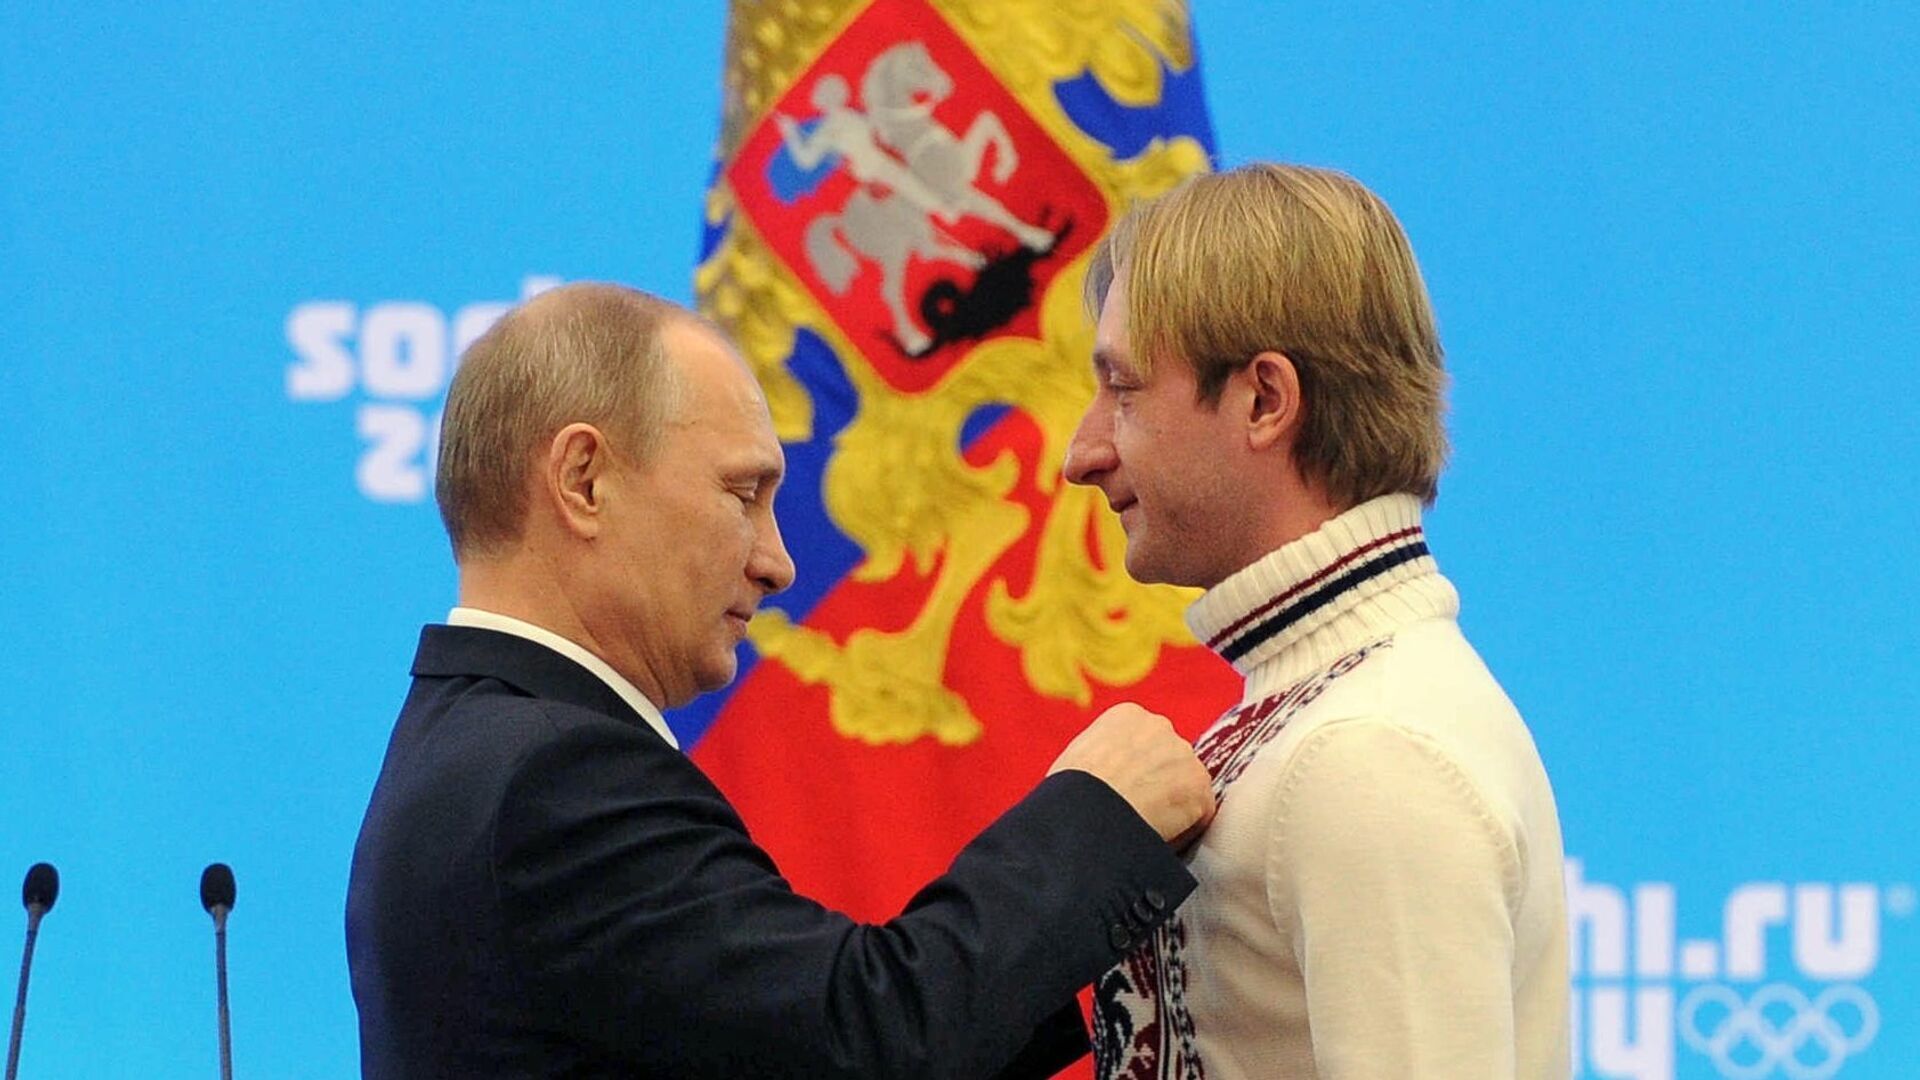 Прогиб года: чемпион ОИ из РФ заявил, что Путин сделал Россию "номером один по качеству жизни и во всех возможных областях"